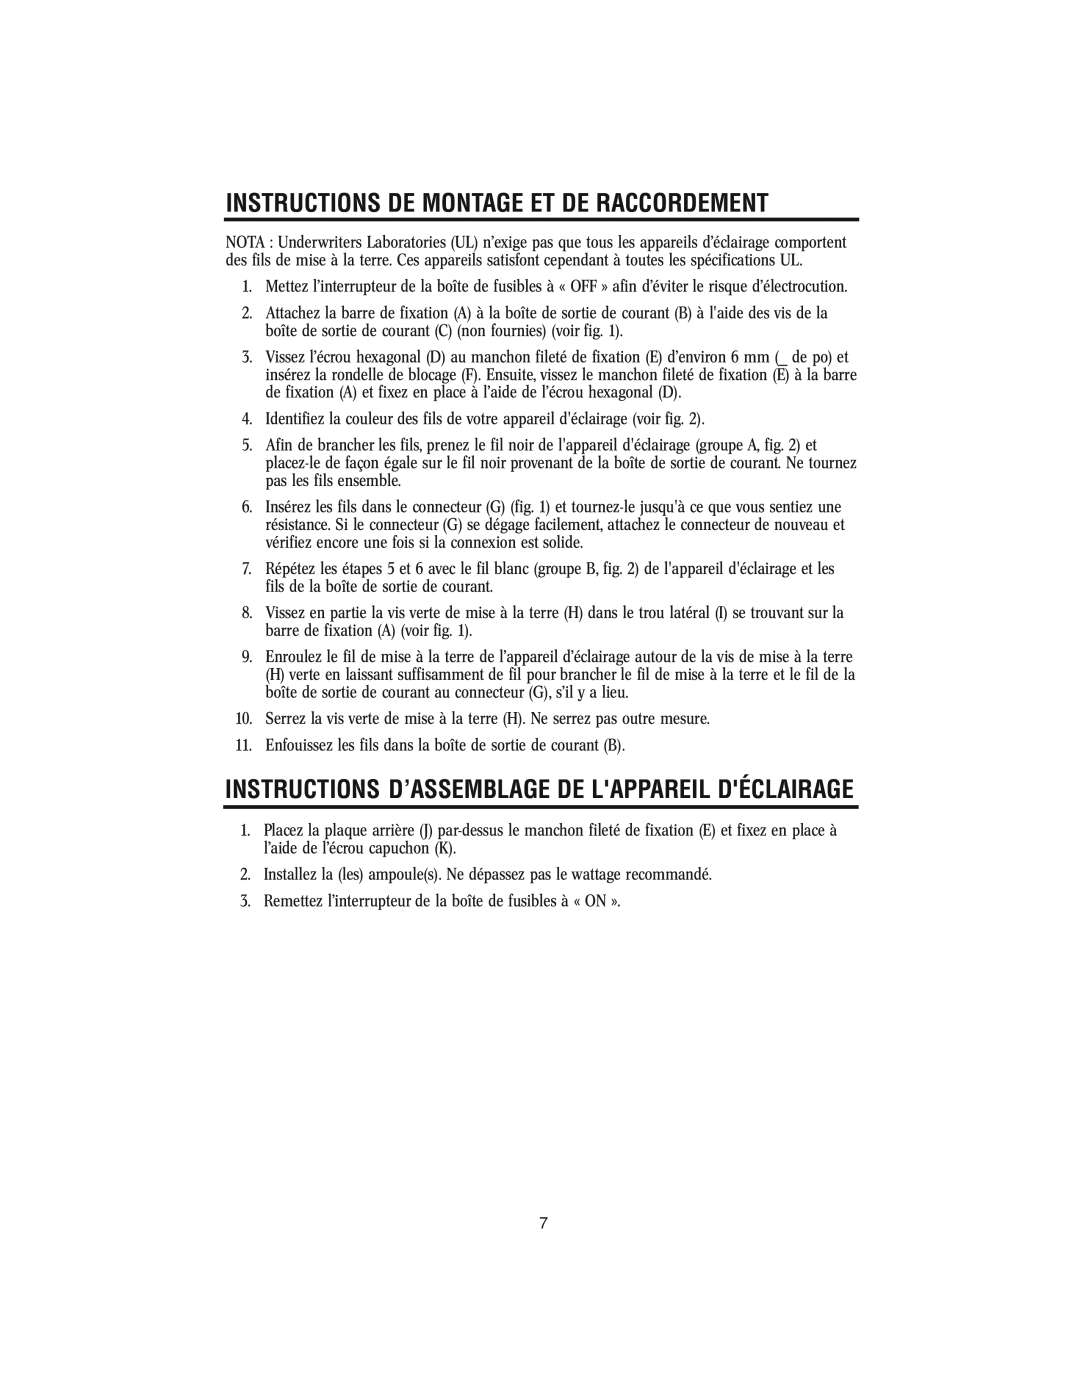 Westinghouse w-143 Instructions D’Assemblage De Lappareil Déclairage, Instructions De Montage Et De Raccordement 